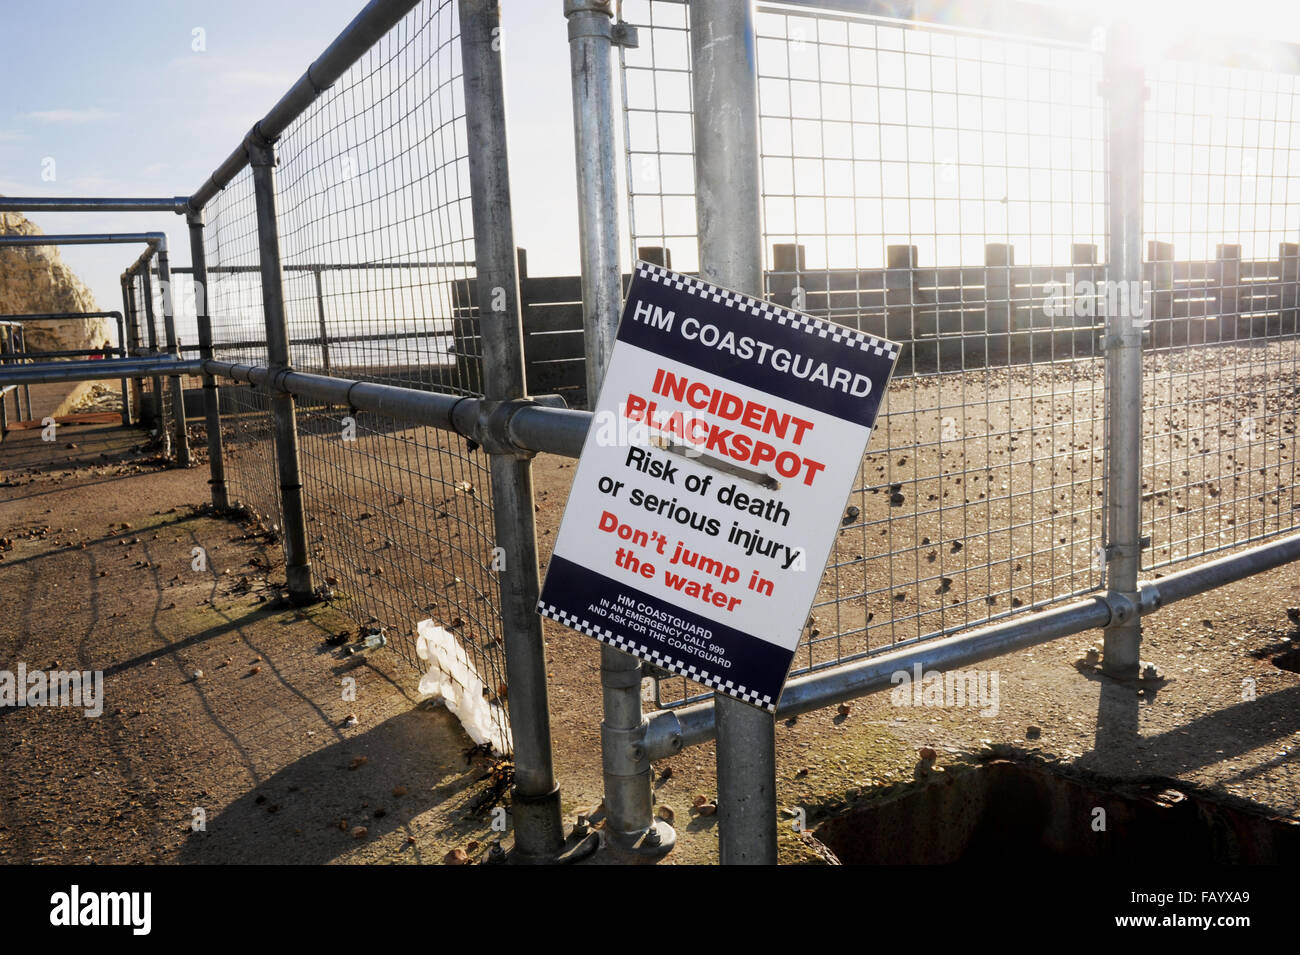 HM Coastguard Blackspot Incident panneau d'avertissement à Seaford beach dans l'East Sussex UK Banque D'Images